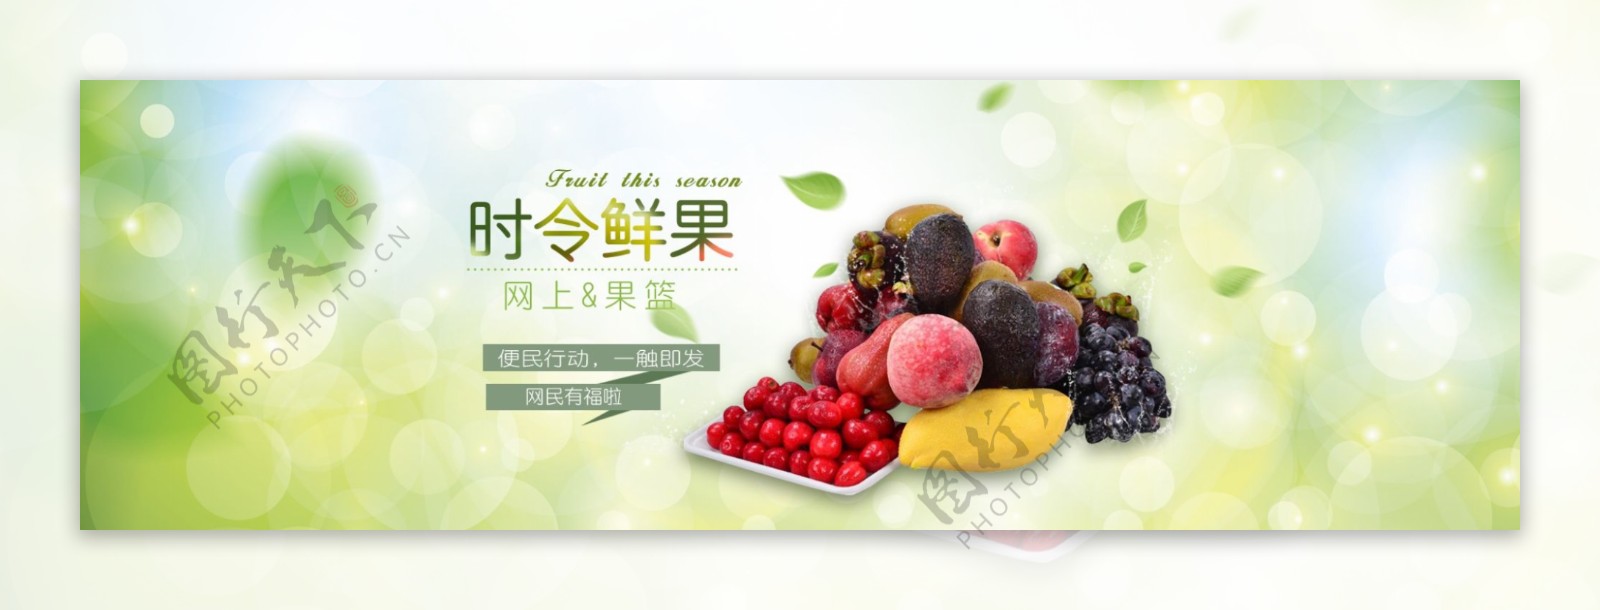 水果banner1